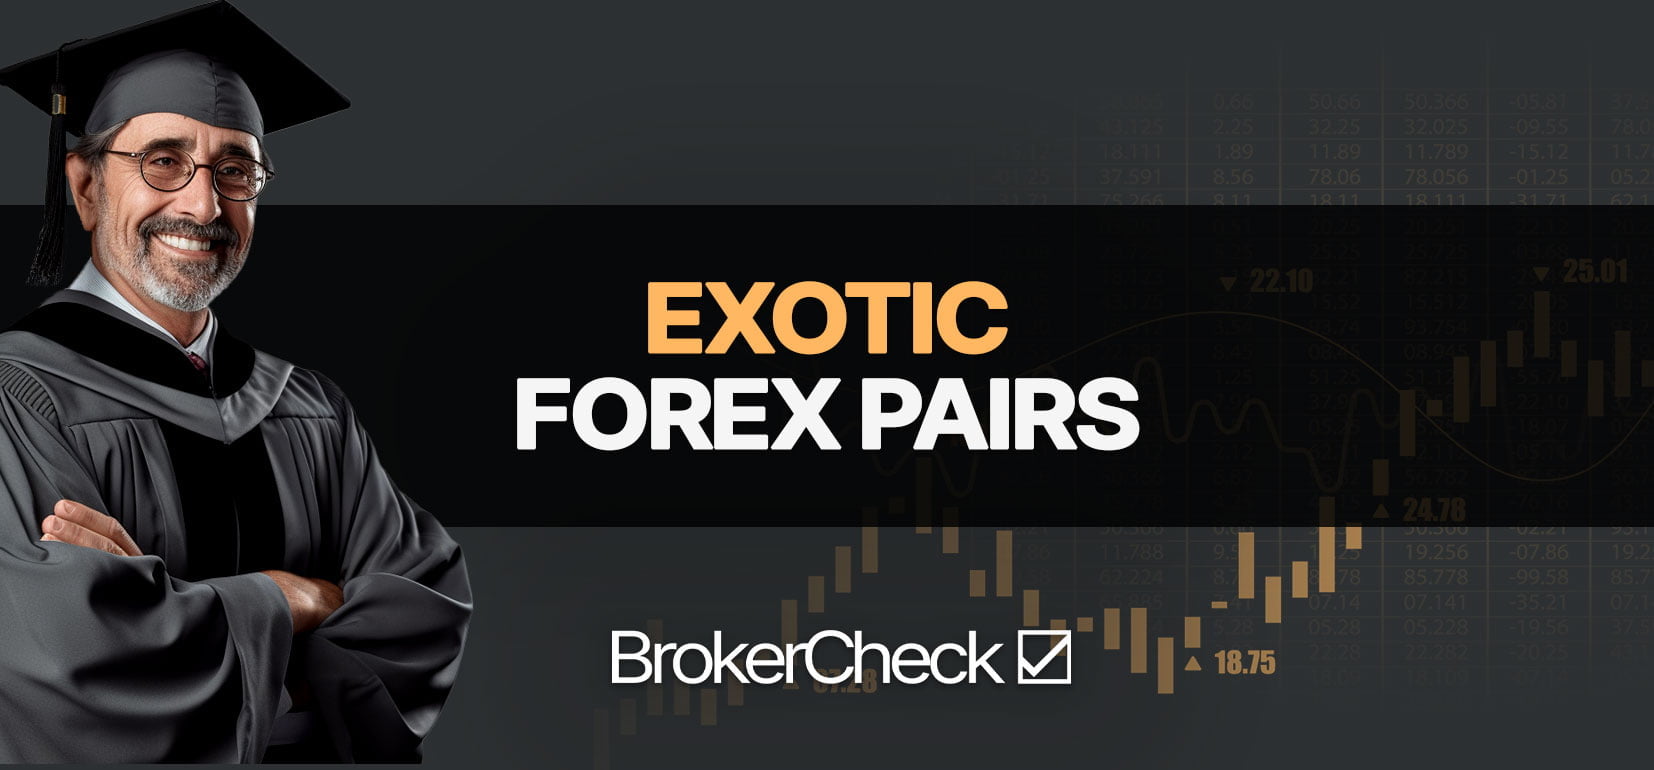 异国情调 Forex 货币对：示例、策略、交易指南